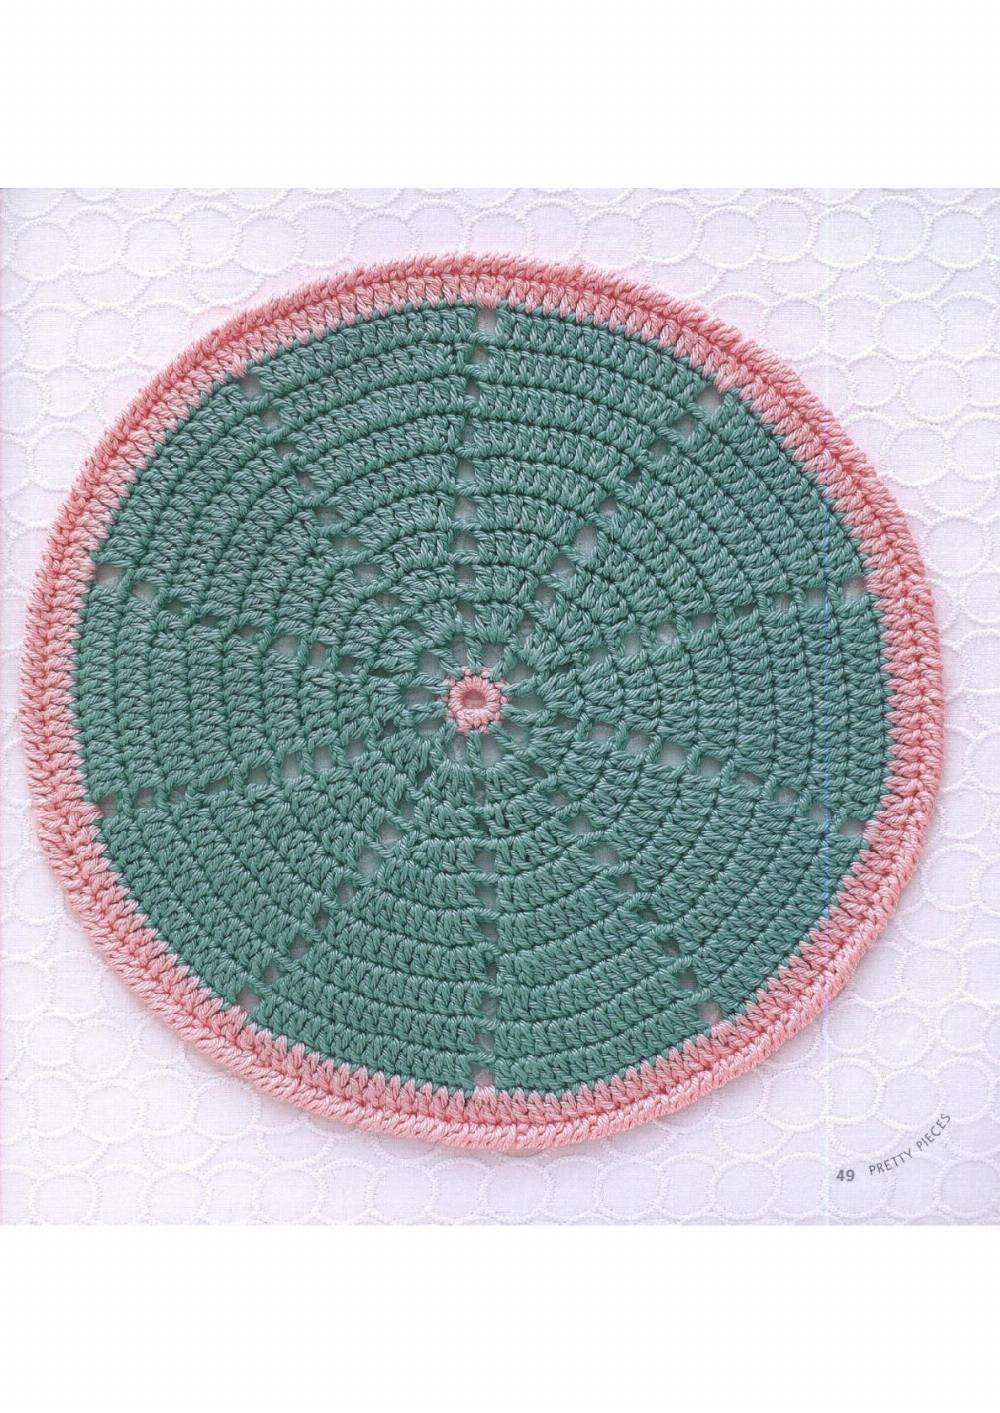 haafner linssen mandalas to crochet 30 great patterns